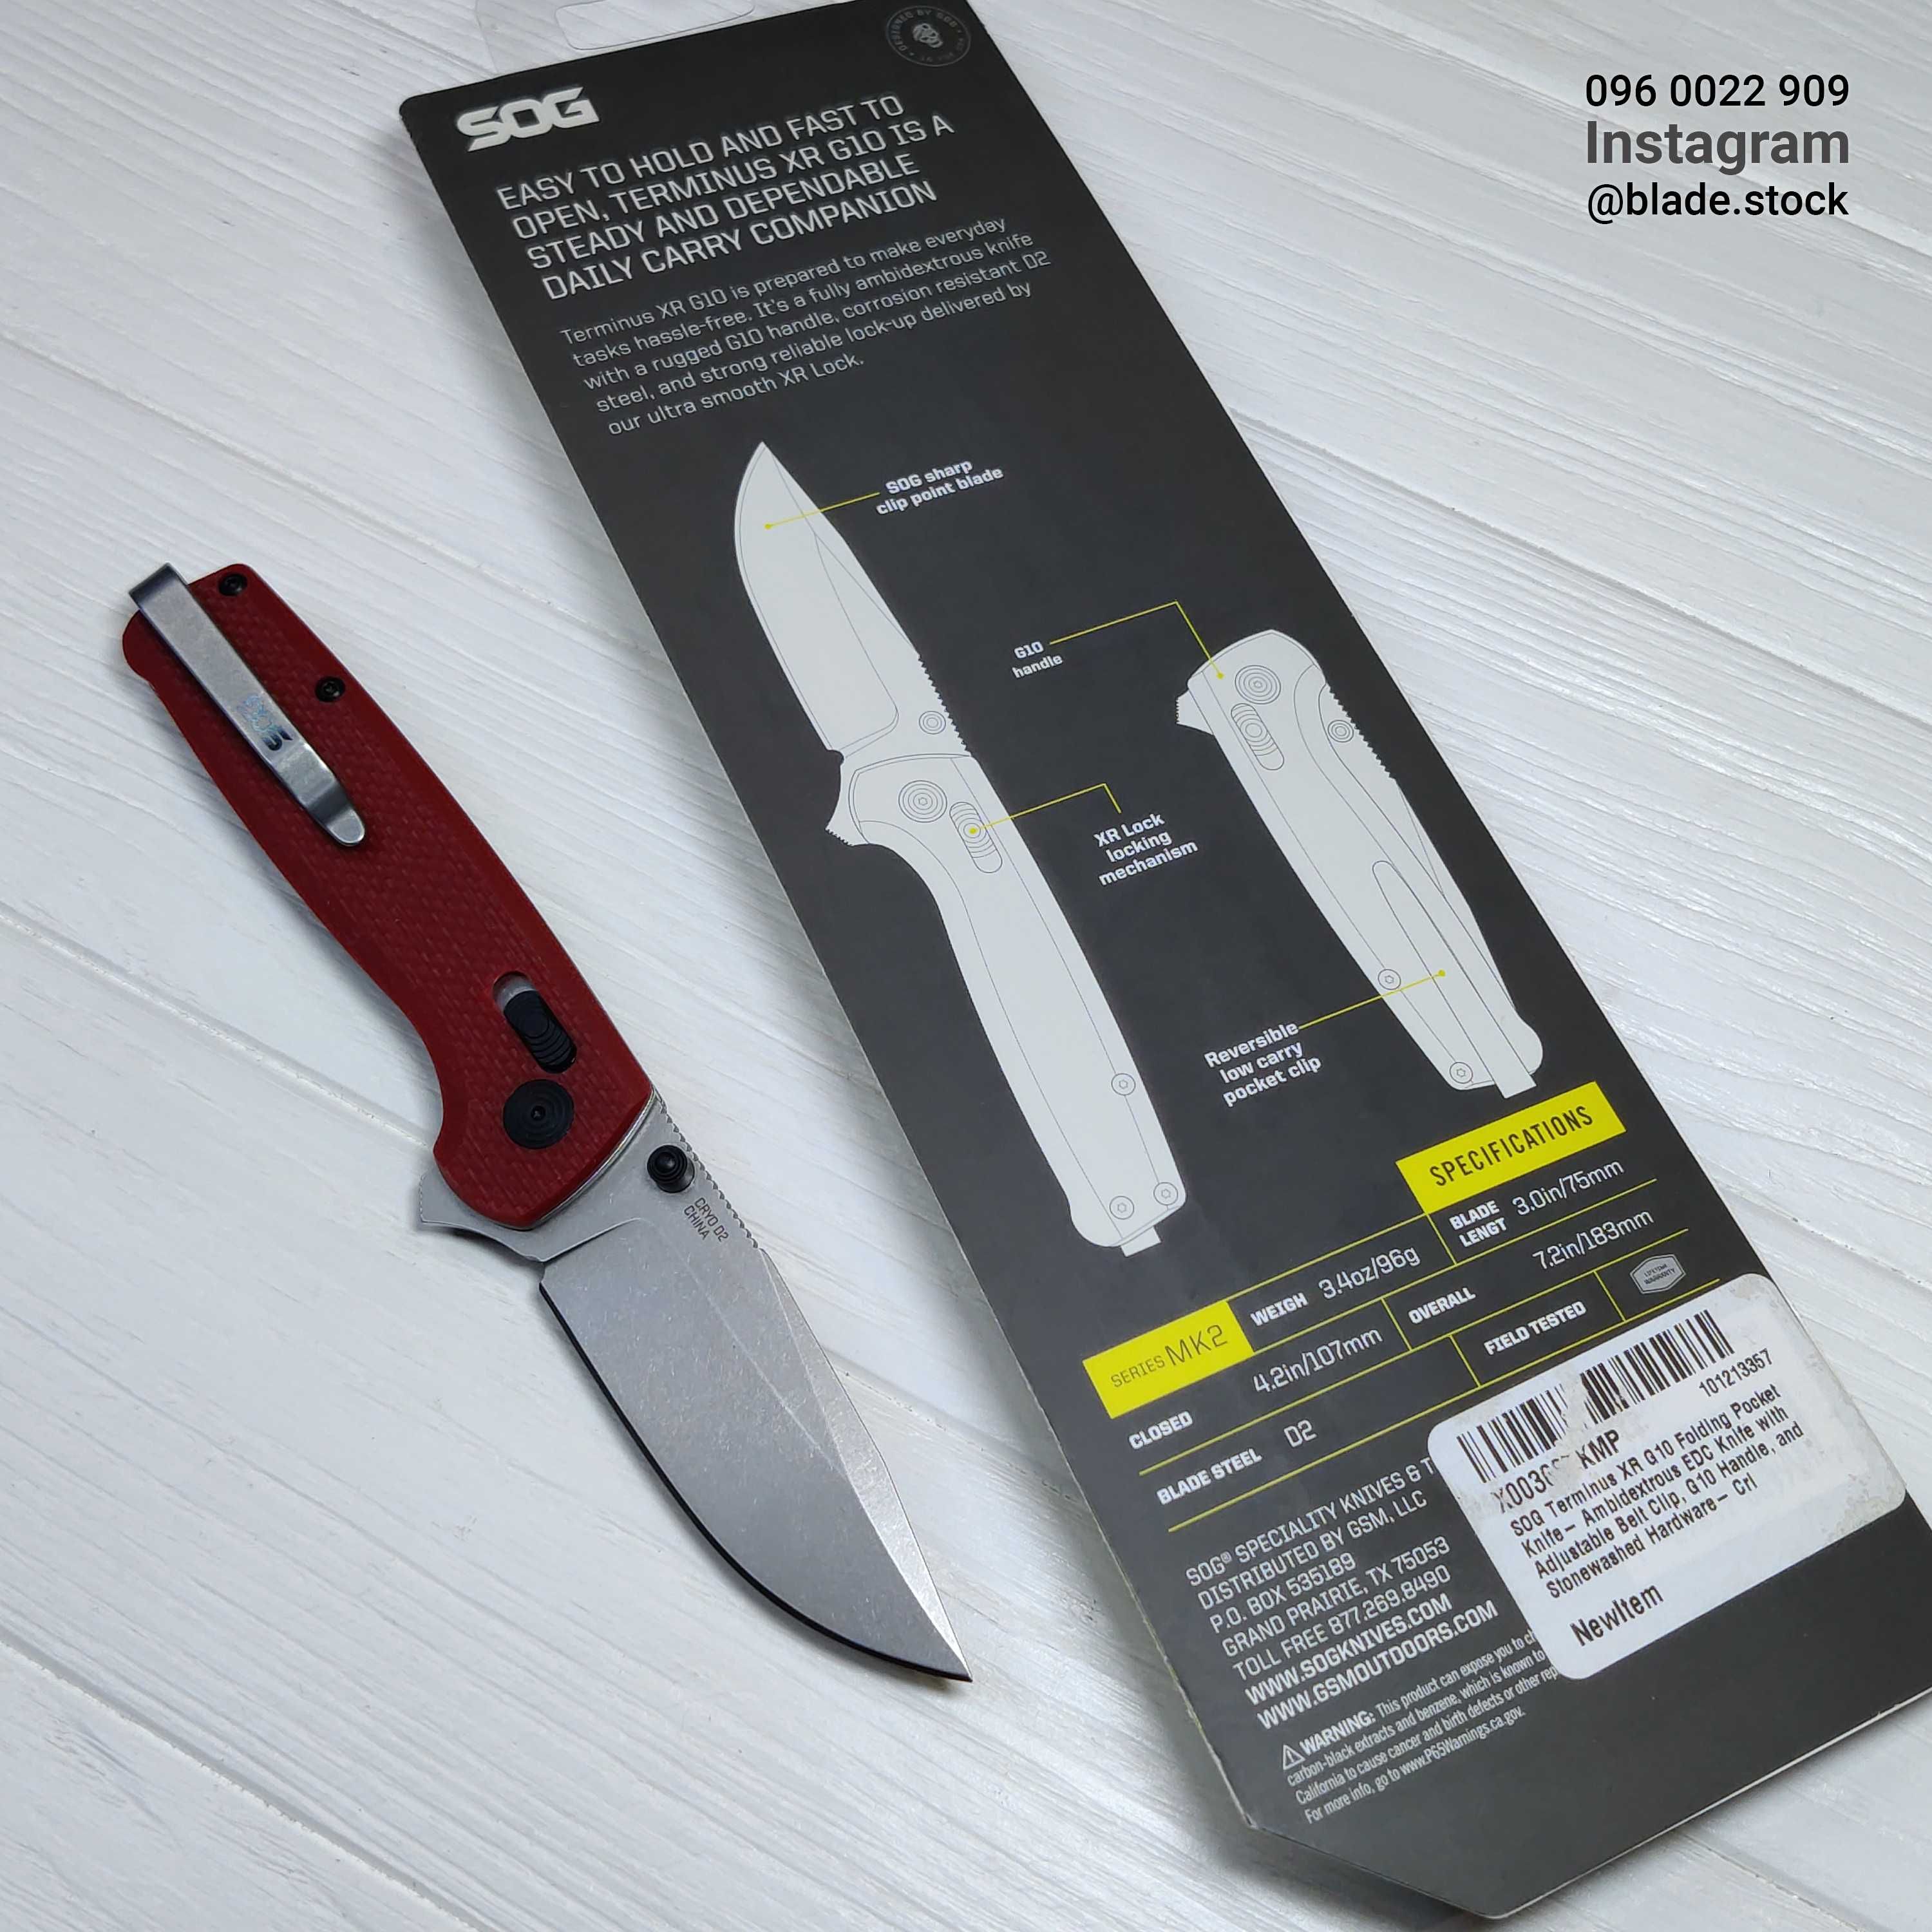 SOG Terminus XR G10 сталь D2 (Оригинал) складной тактический нож